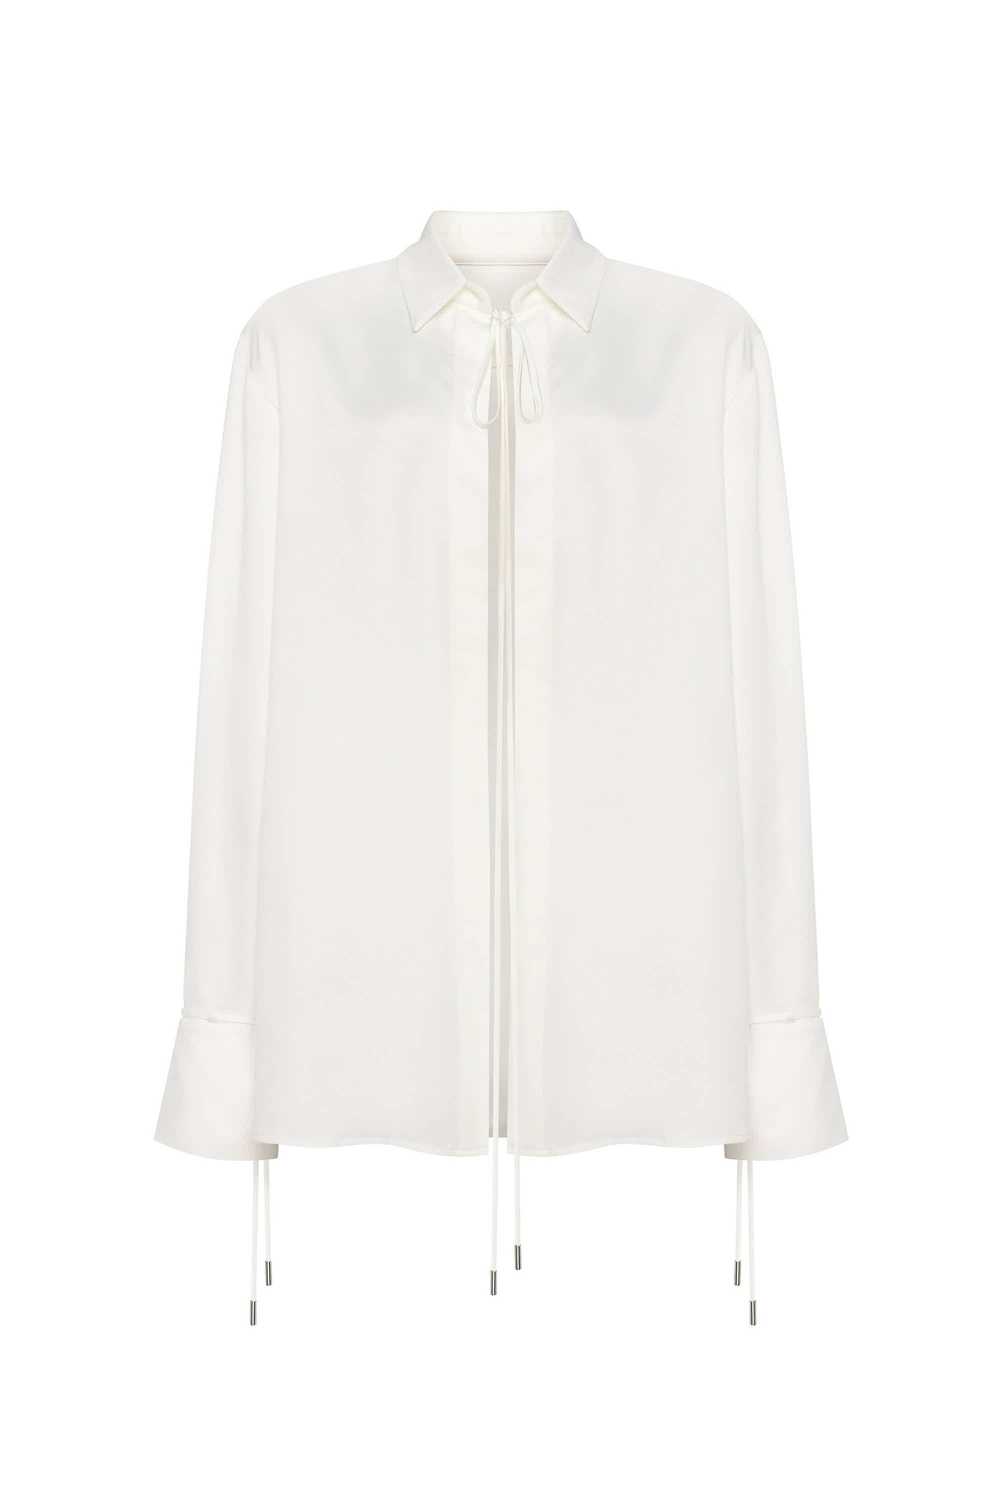 Milla Front-tie satin blouse in white, Xo Xo - image 1